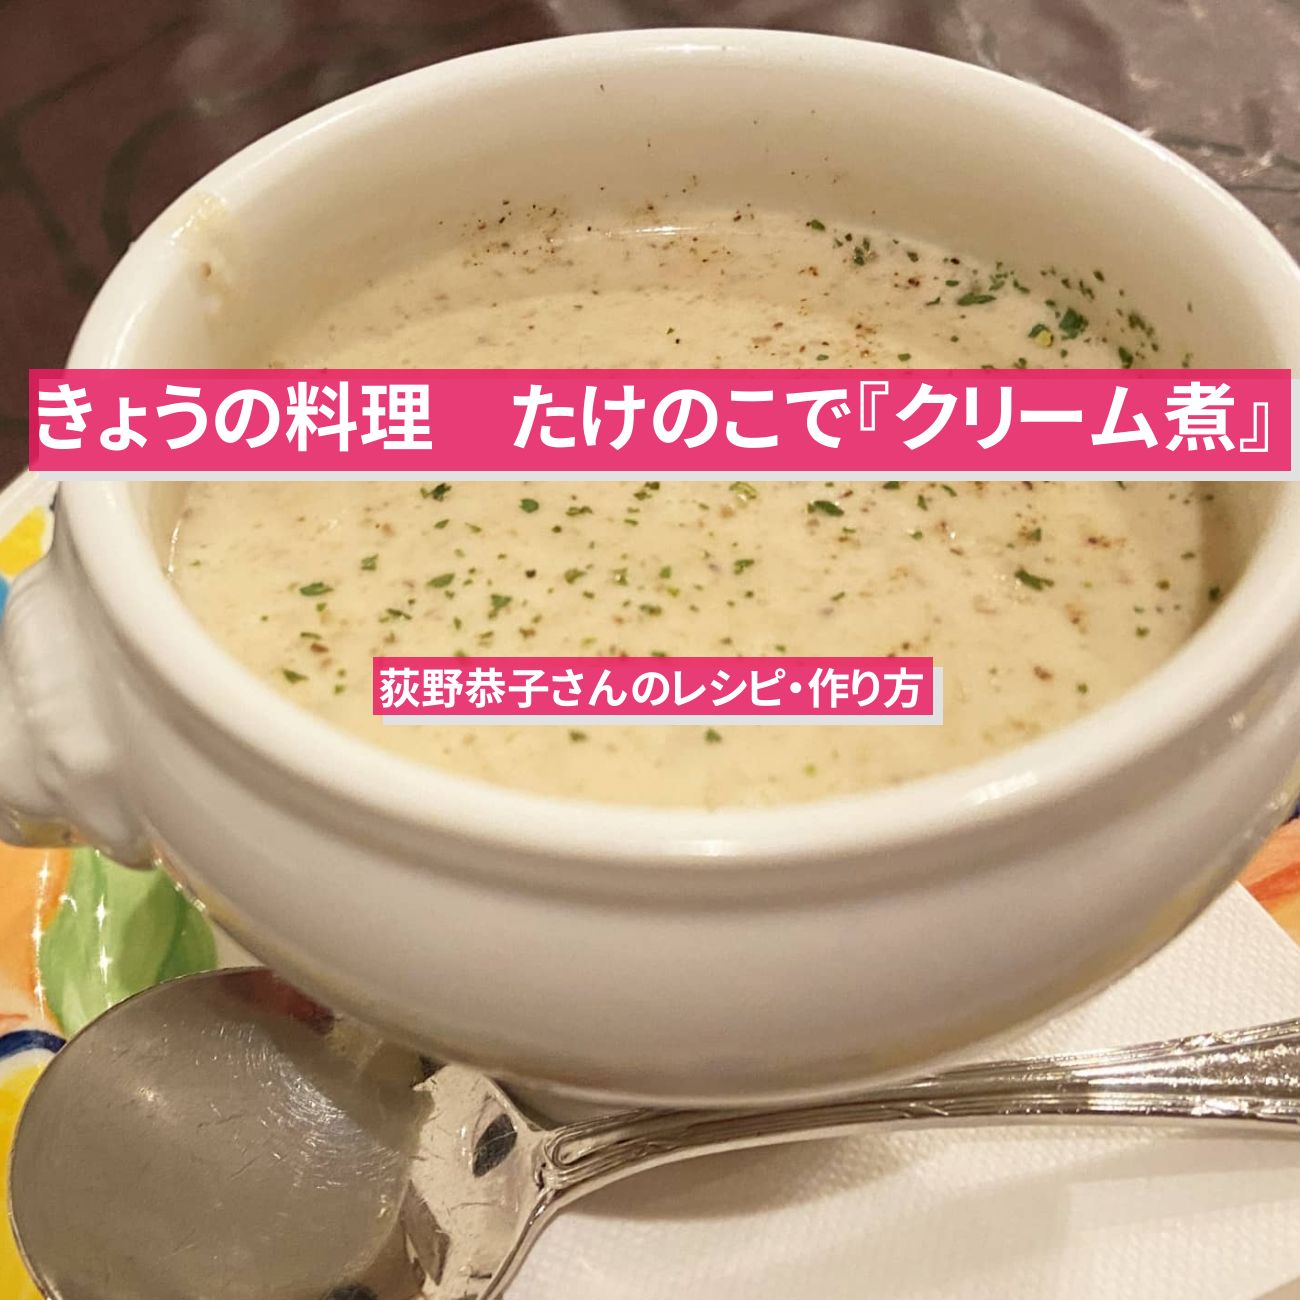 【きょうの料理】たけのこで『クリーム煮』荻野恭子さんのレシピ・作り方